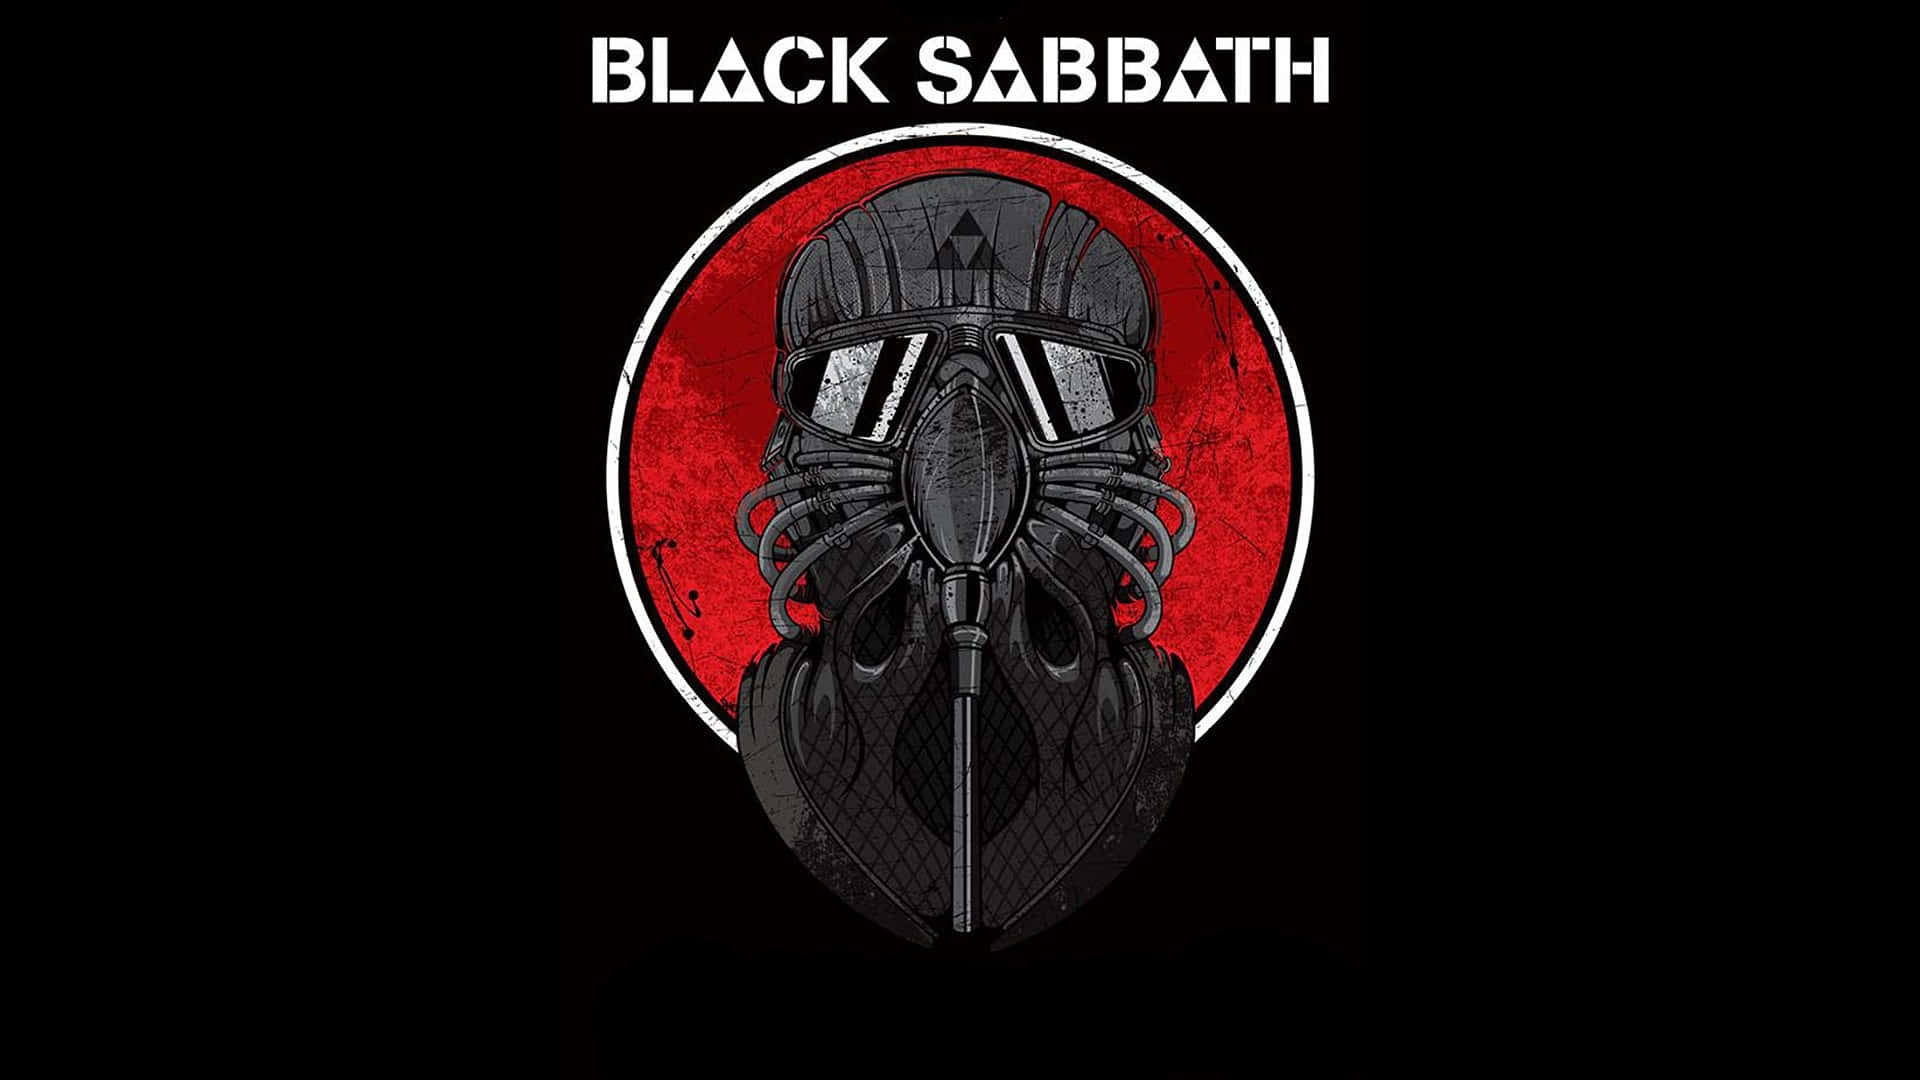 Heavy Metal Black Sabbath [wallpaper] Wallpaper